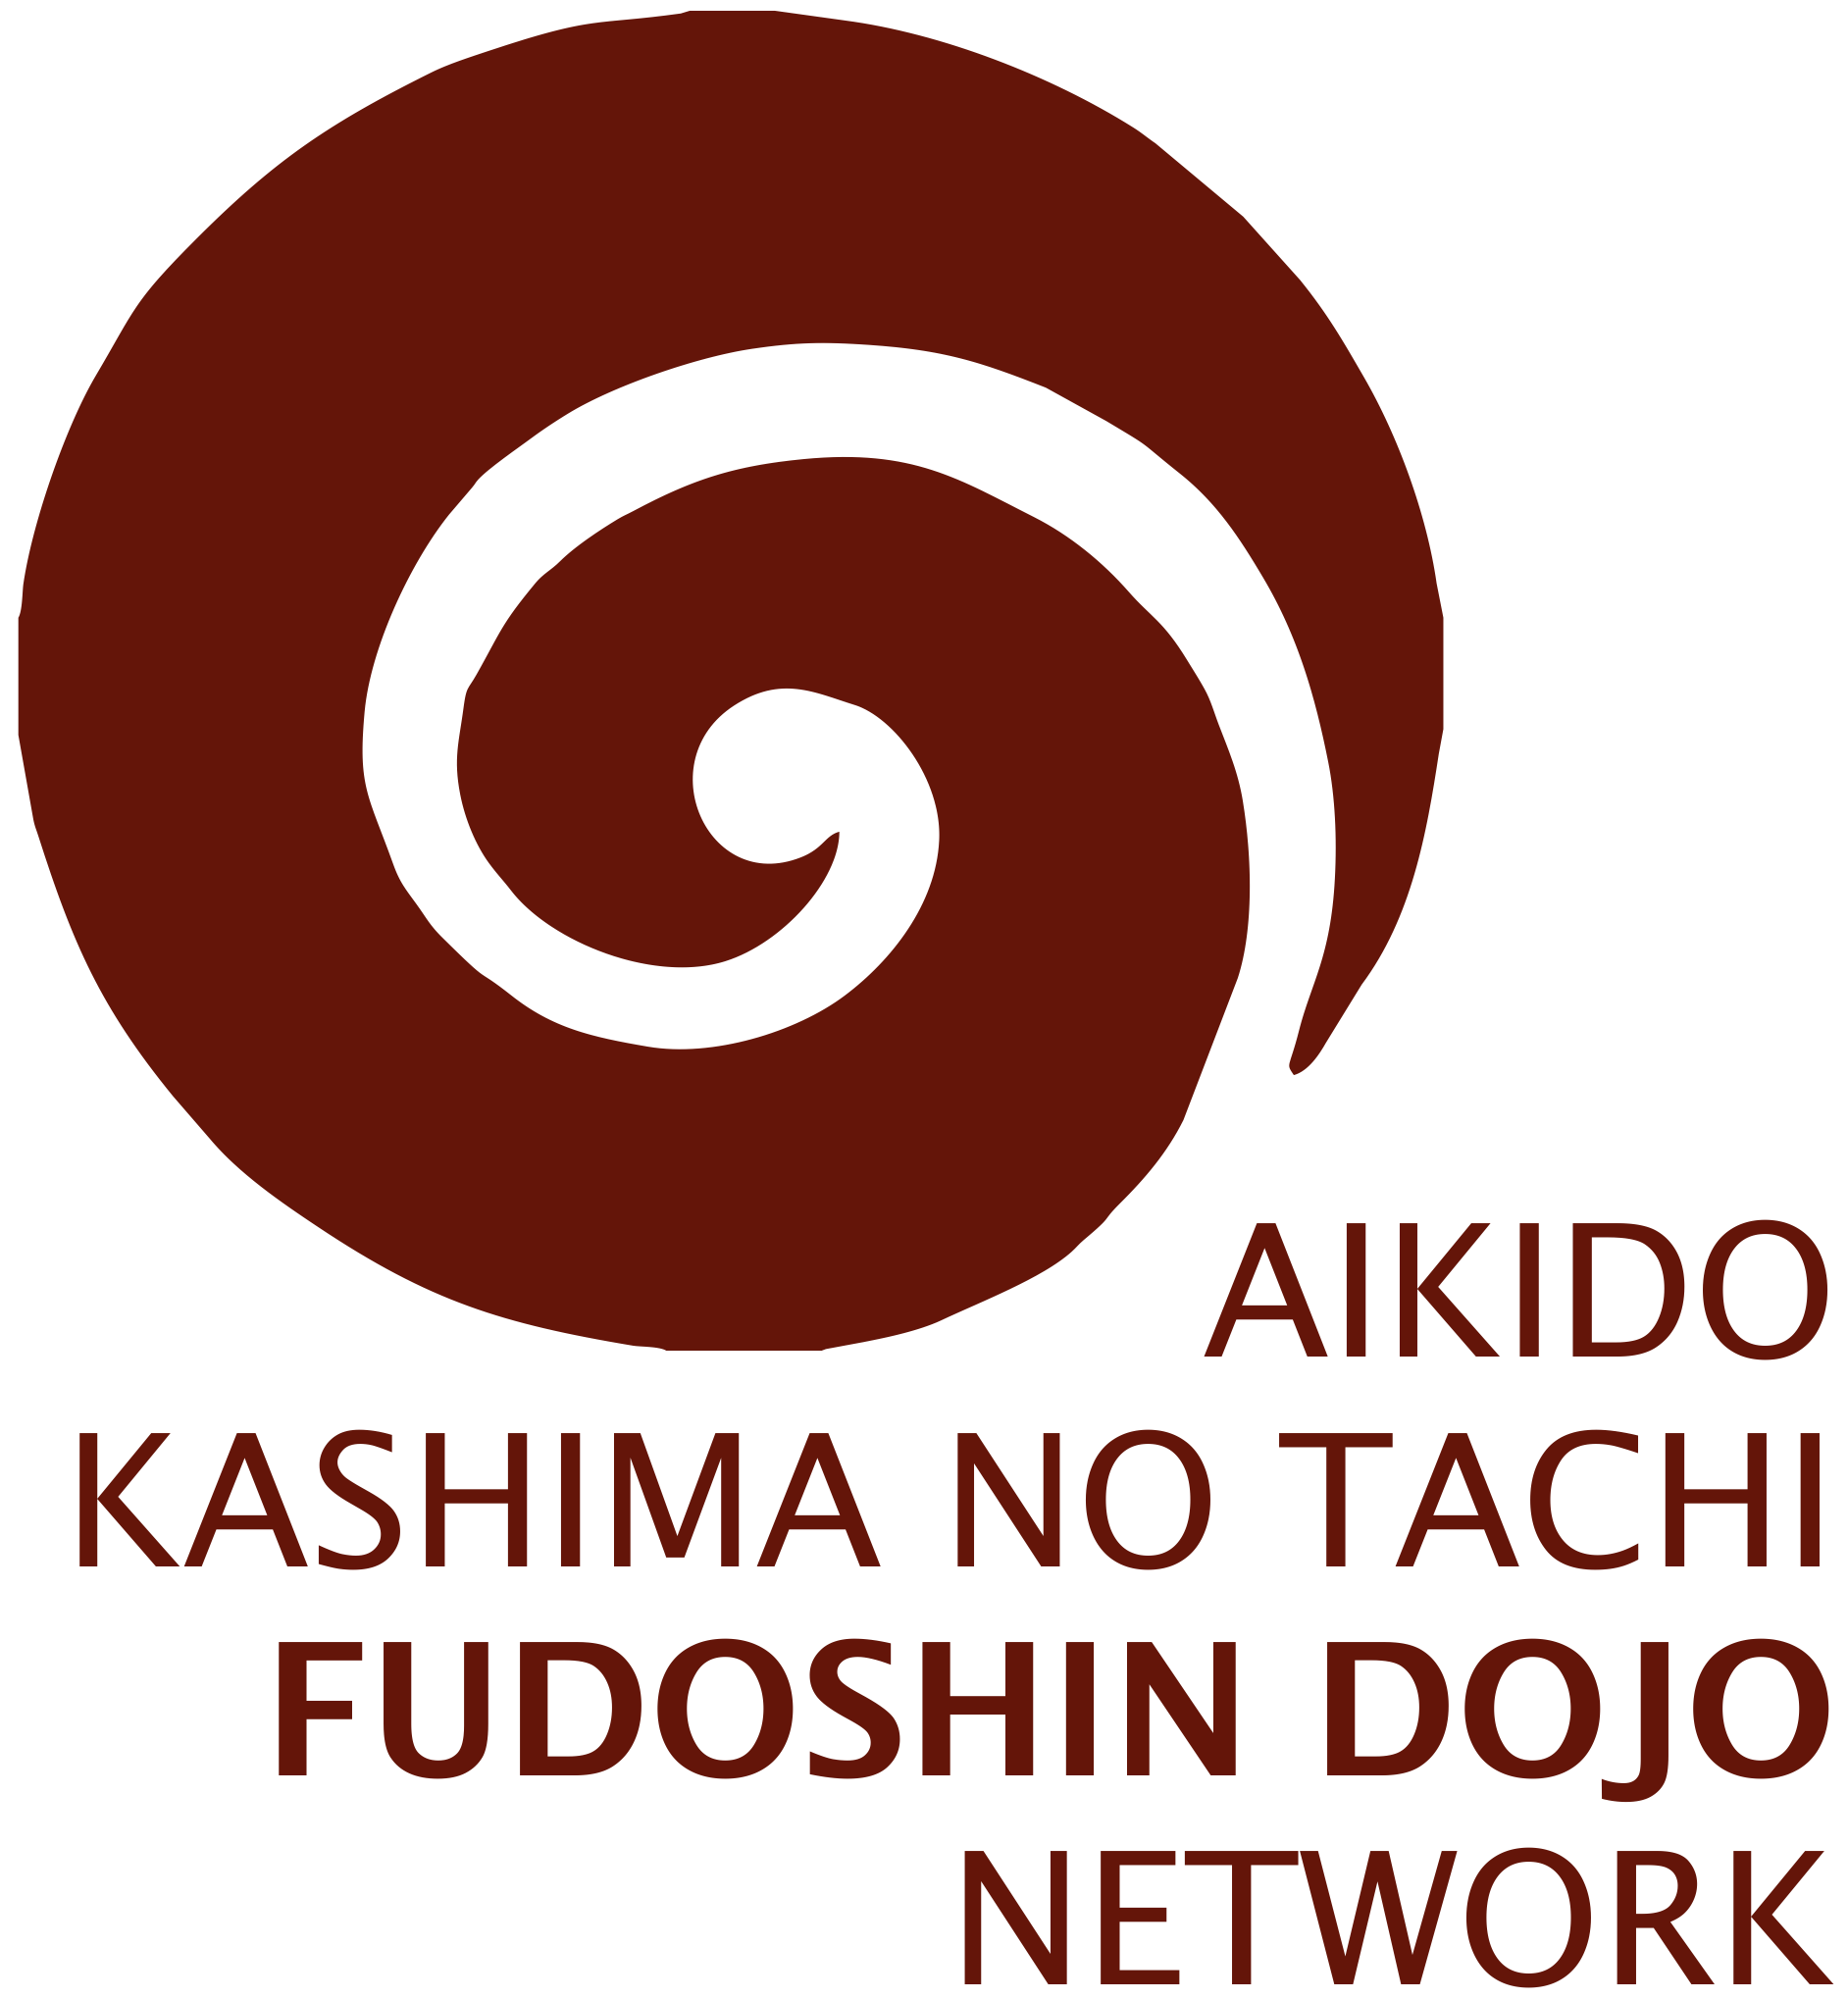 Fudoshin Dojo Network - Aikido, Kashima no tachi